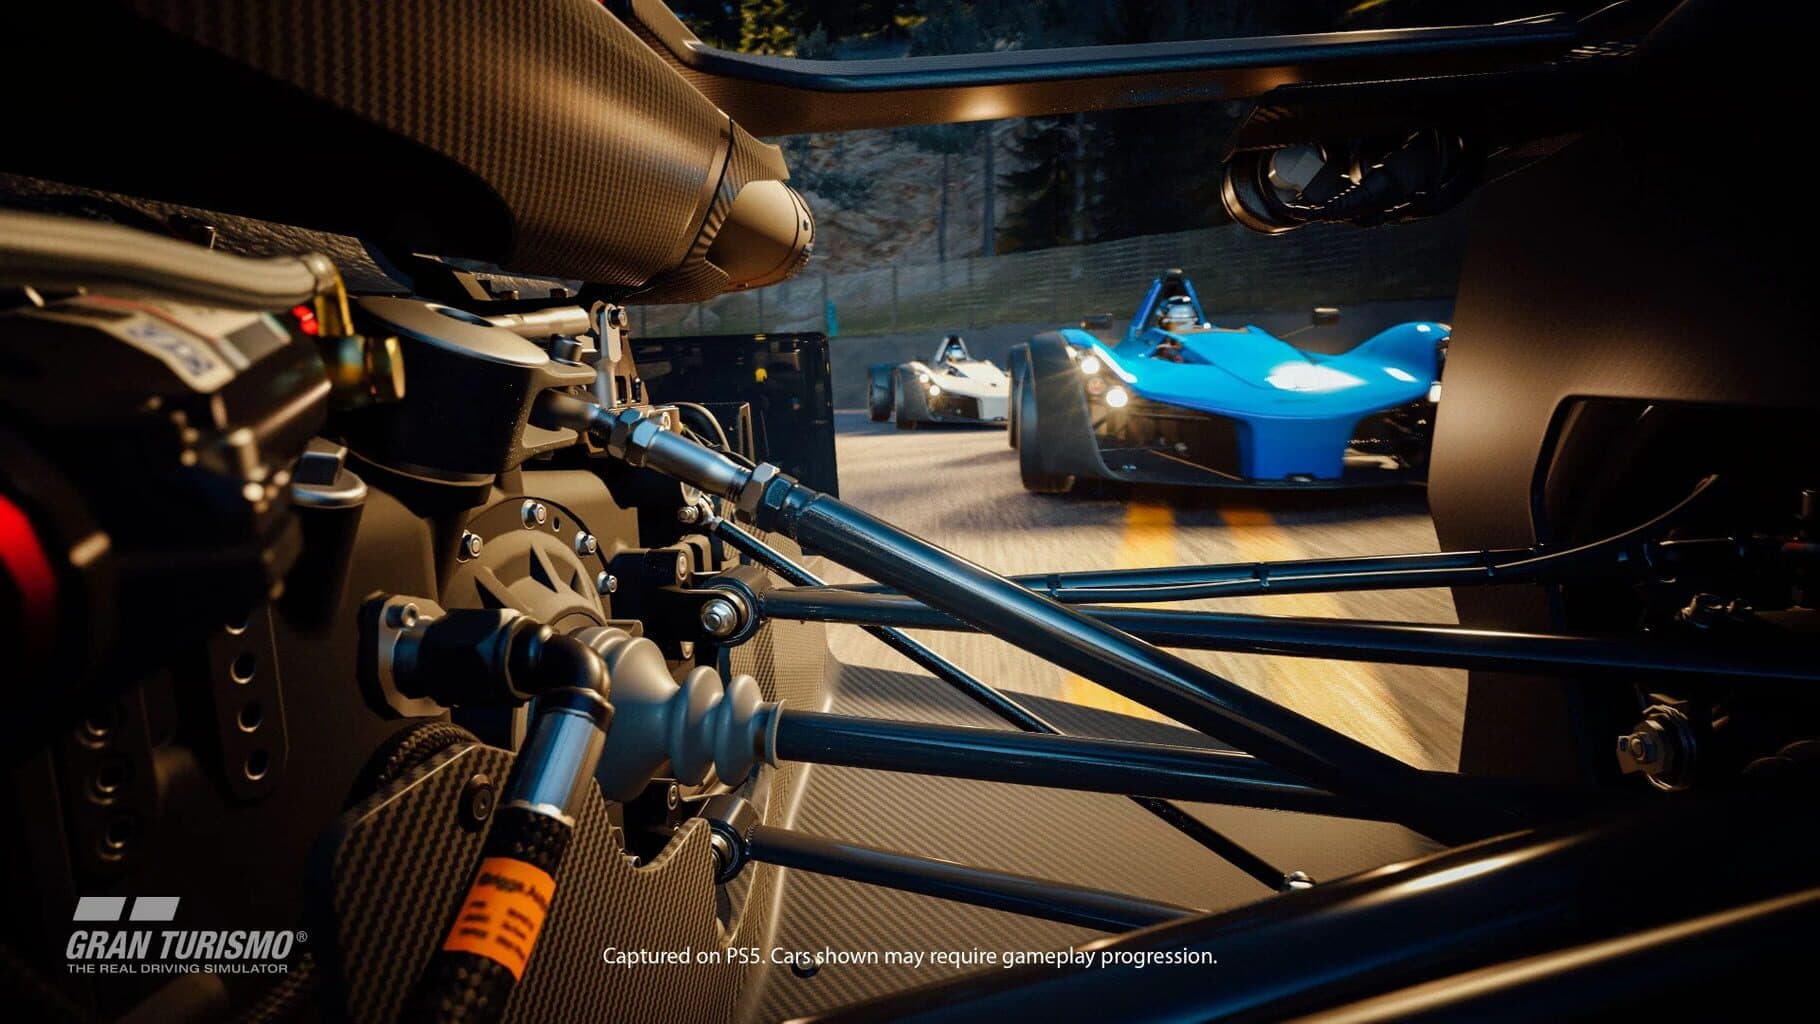 Gran Turismo 7: 25th Anniversary Edition Image